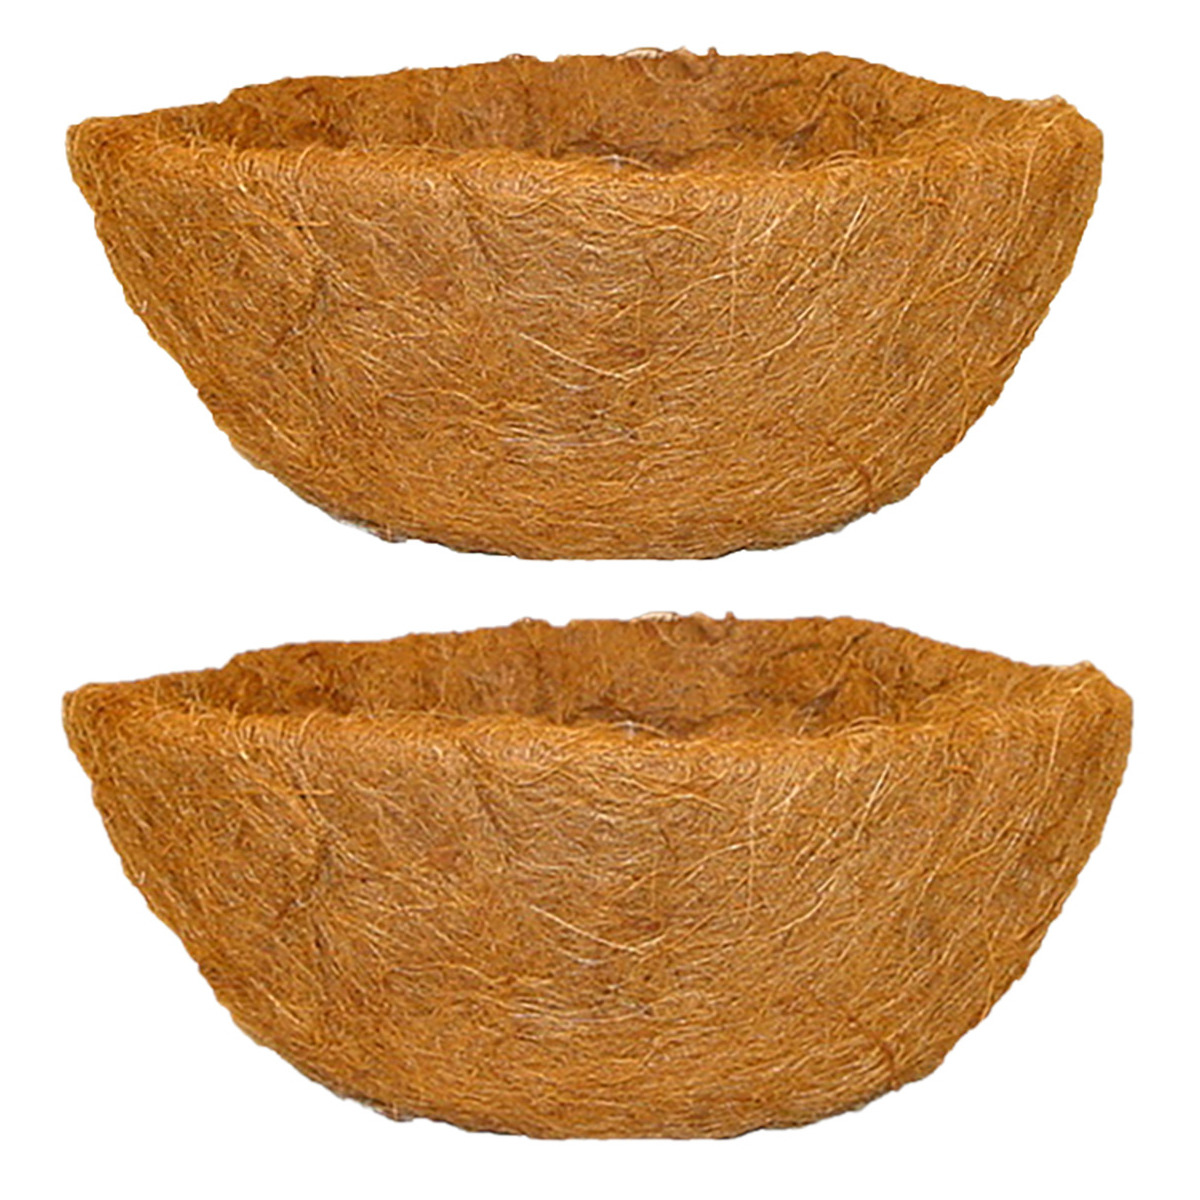 2x stuks voorgevormde inlegvellen kokos voor hanging basket 40 cm kokosinleggers